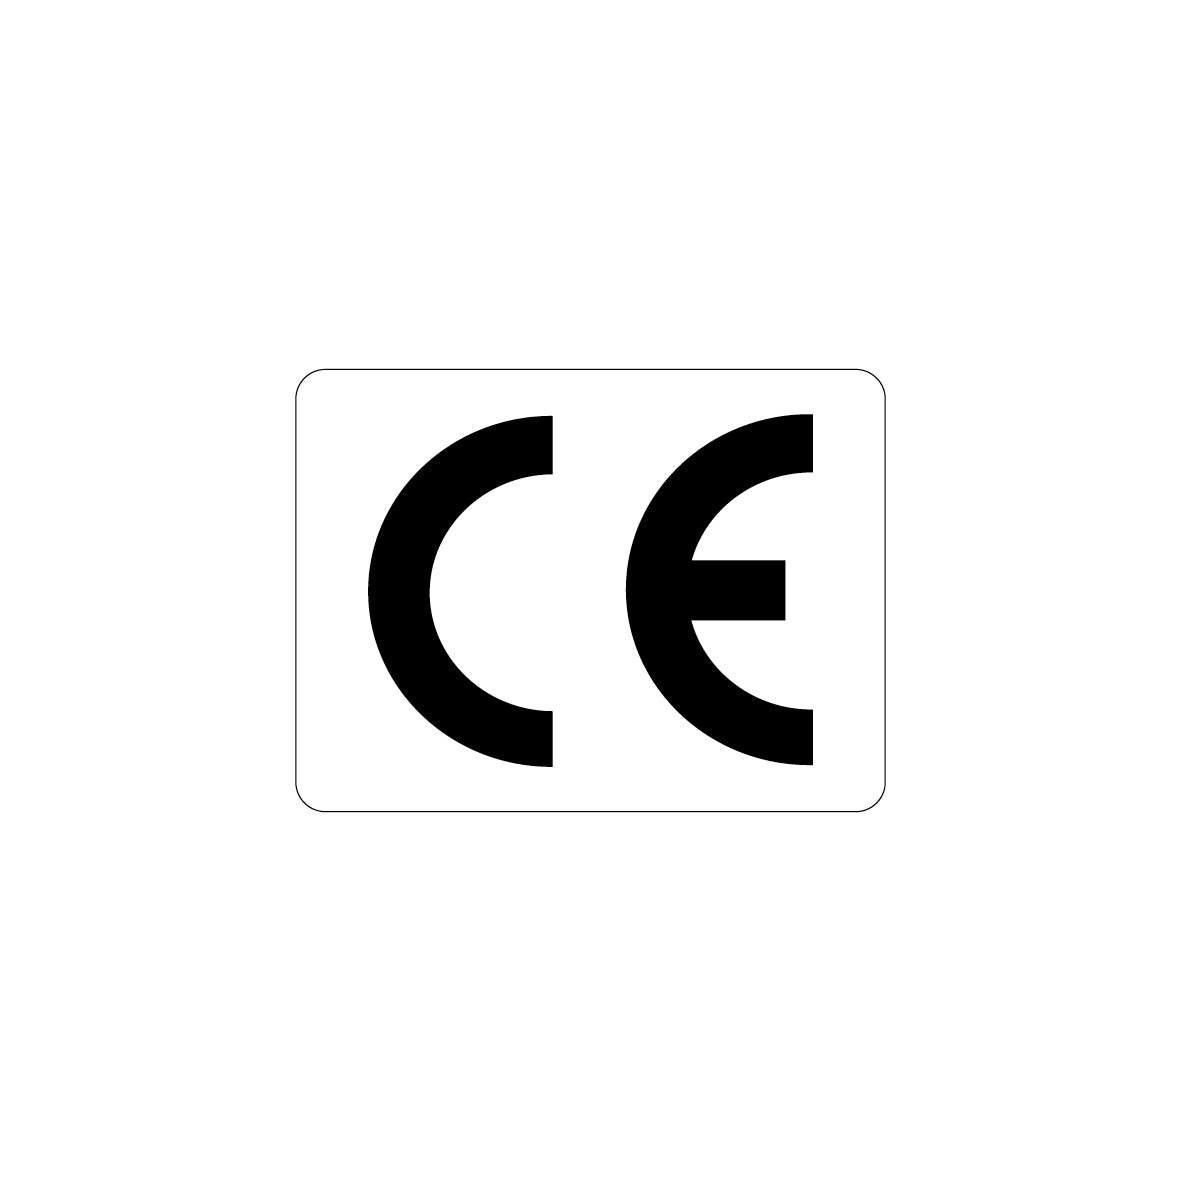 CE-Zeichen, 4.0061, 20 x 15 mm, Schrifthöhe 10 mm, FO, auf Bogen = 25 Stk., weiss/schwarz, Einheit 100 Stk.